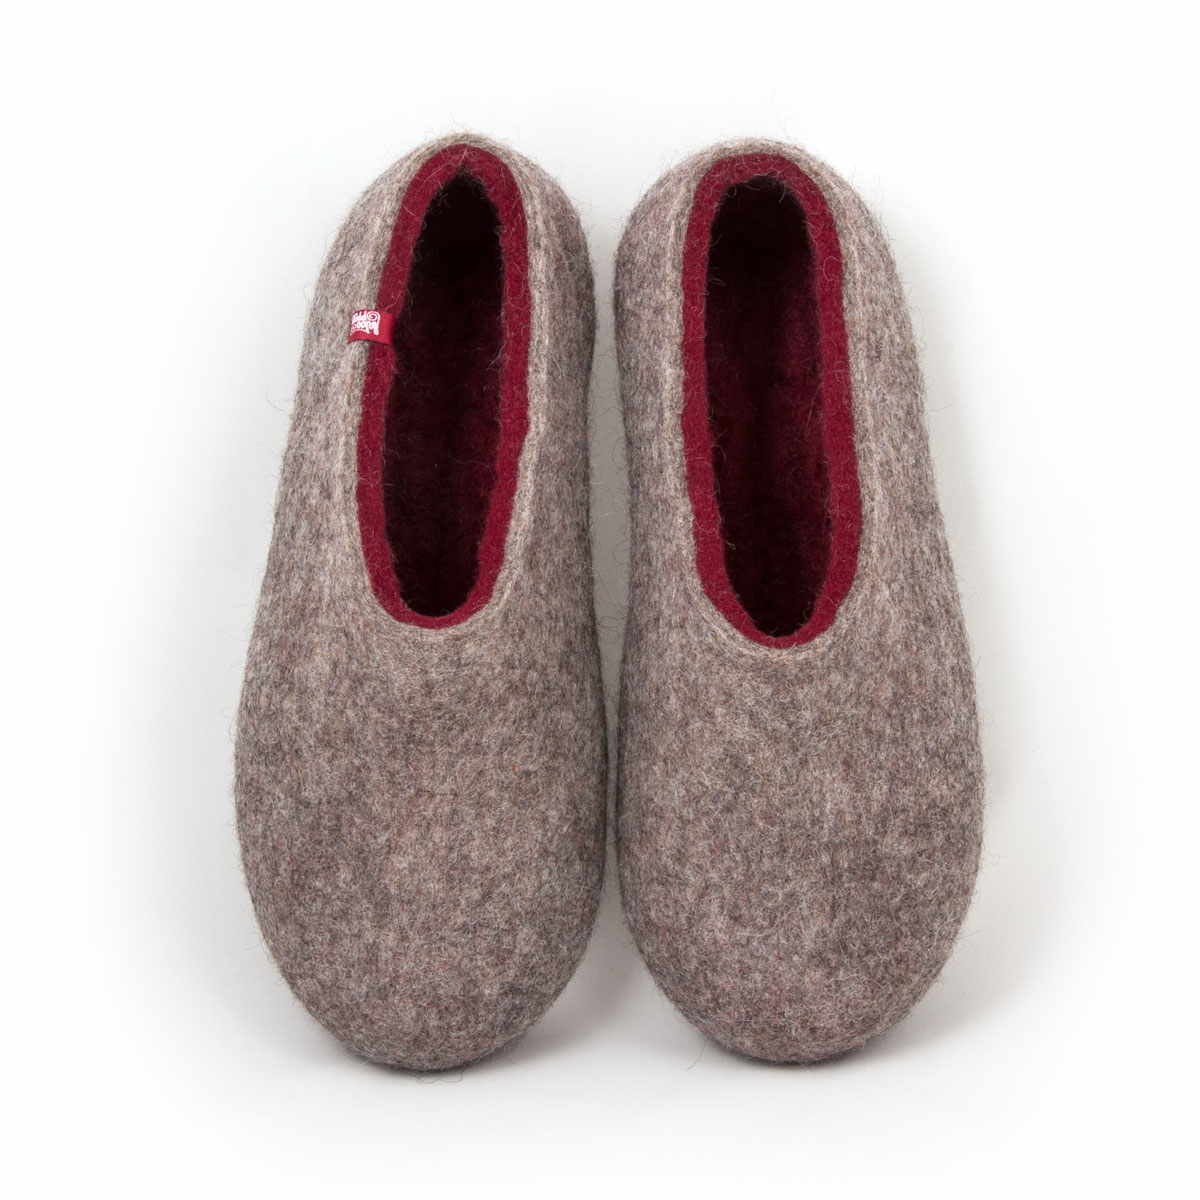 Mens wool slippers DUAL NATURAL dark red 58509